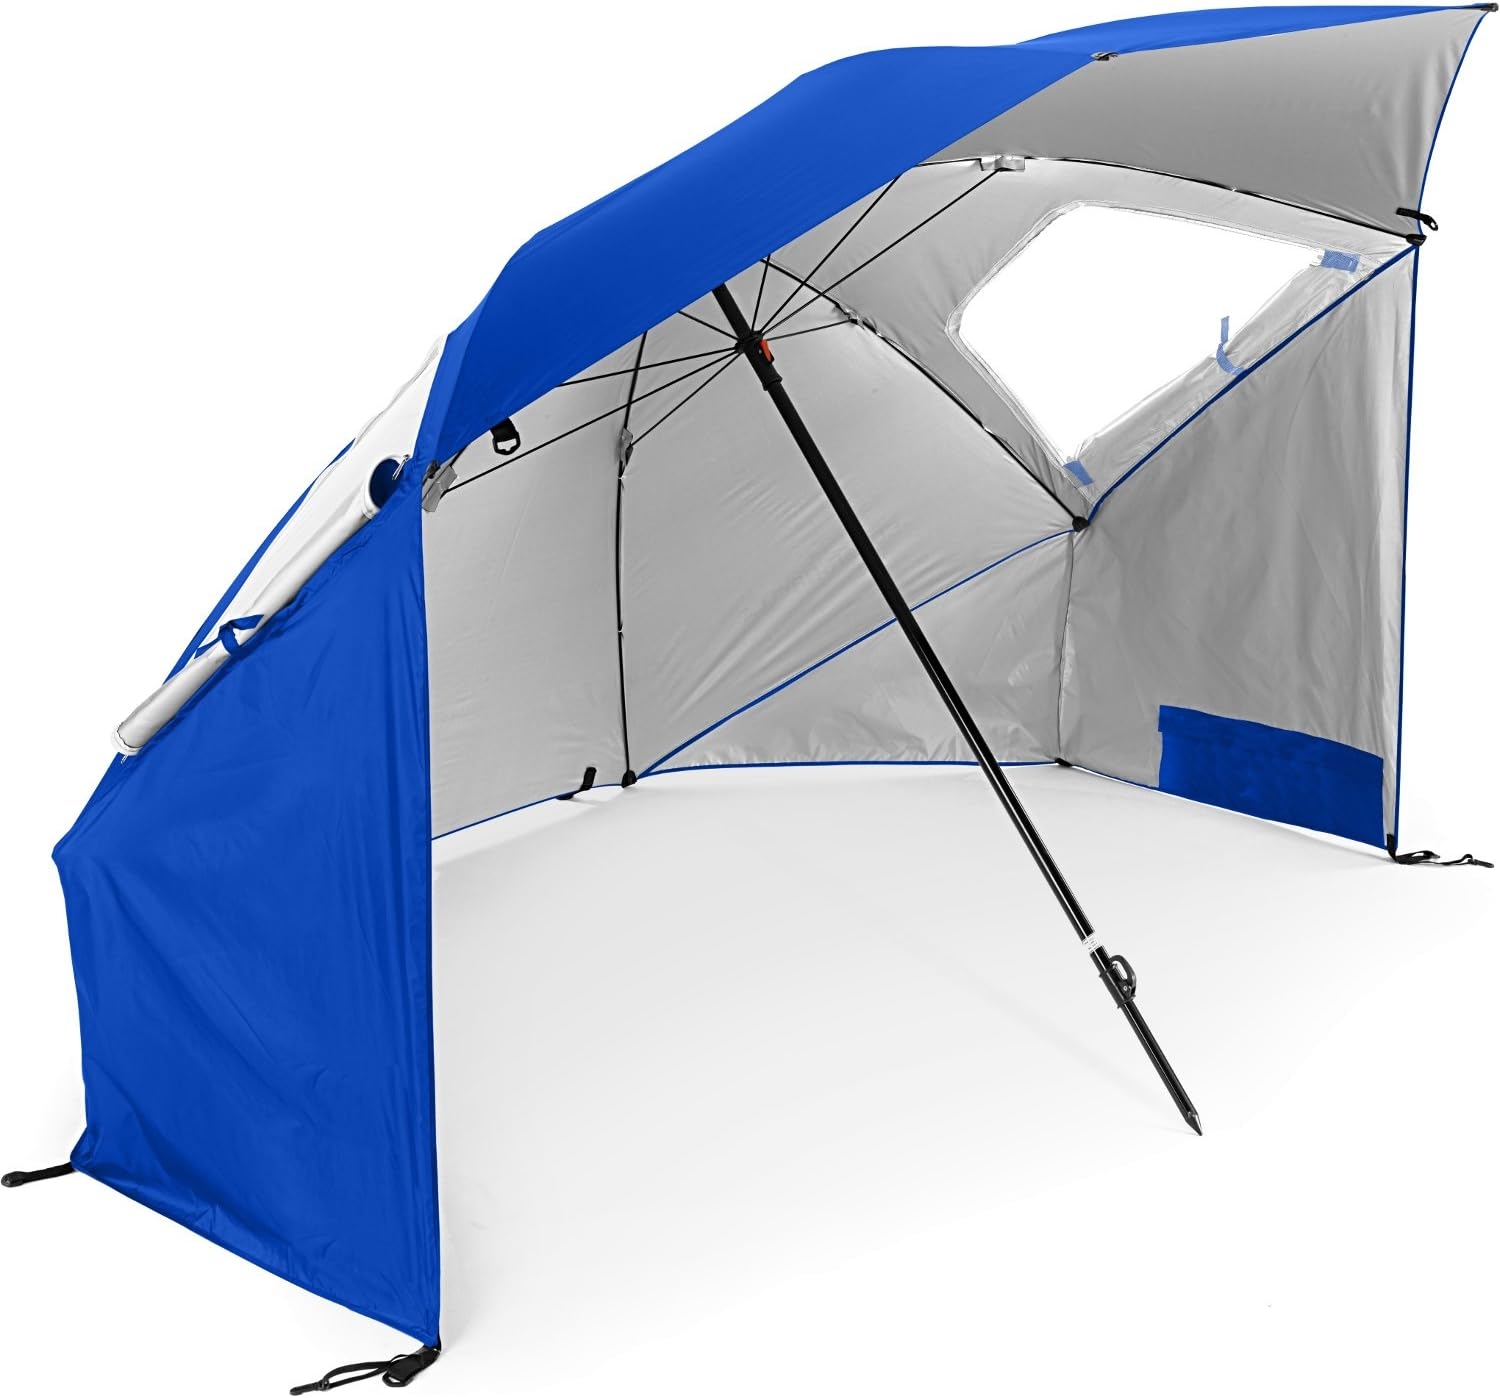 Sport-Brella Super-Brella SPF 50+ Sun and Rain Canopy Umbrella for Camping, Beach and Sports Events (8-Foot, Blue)   price